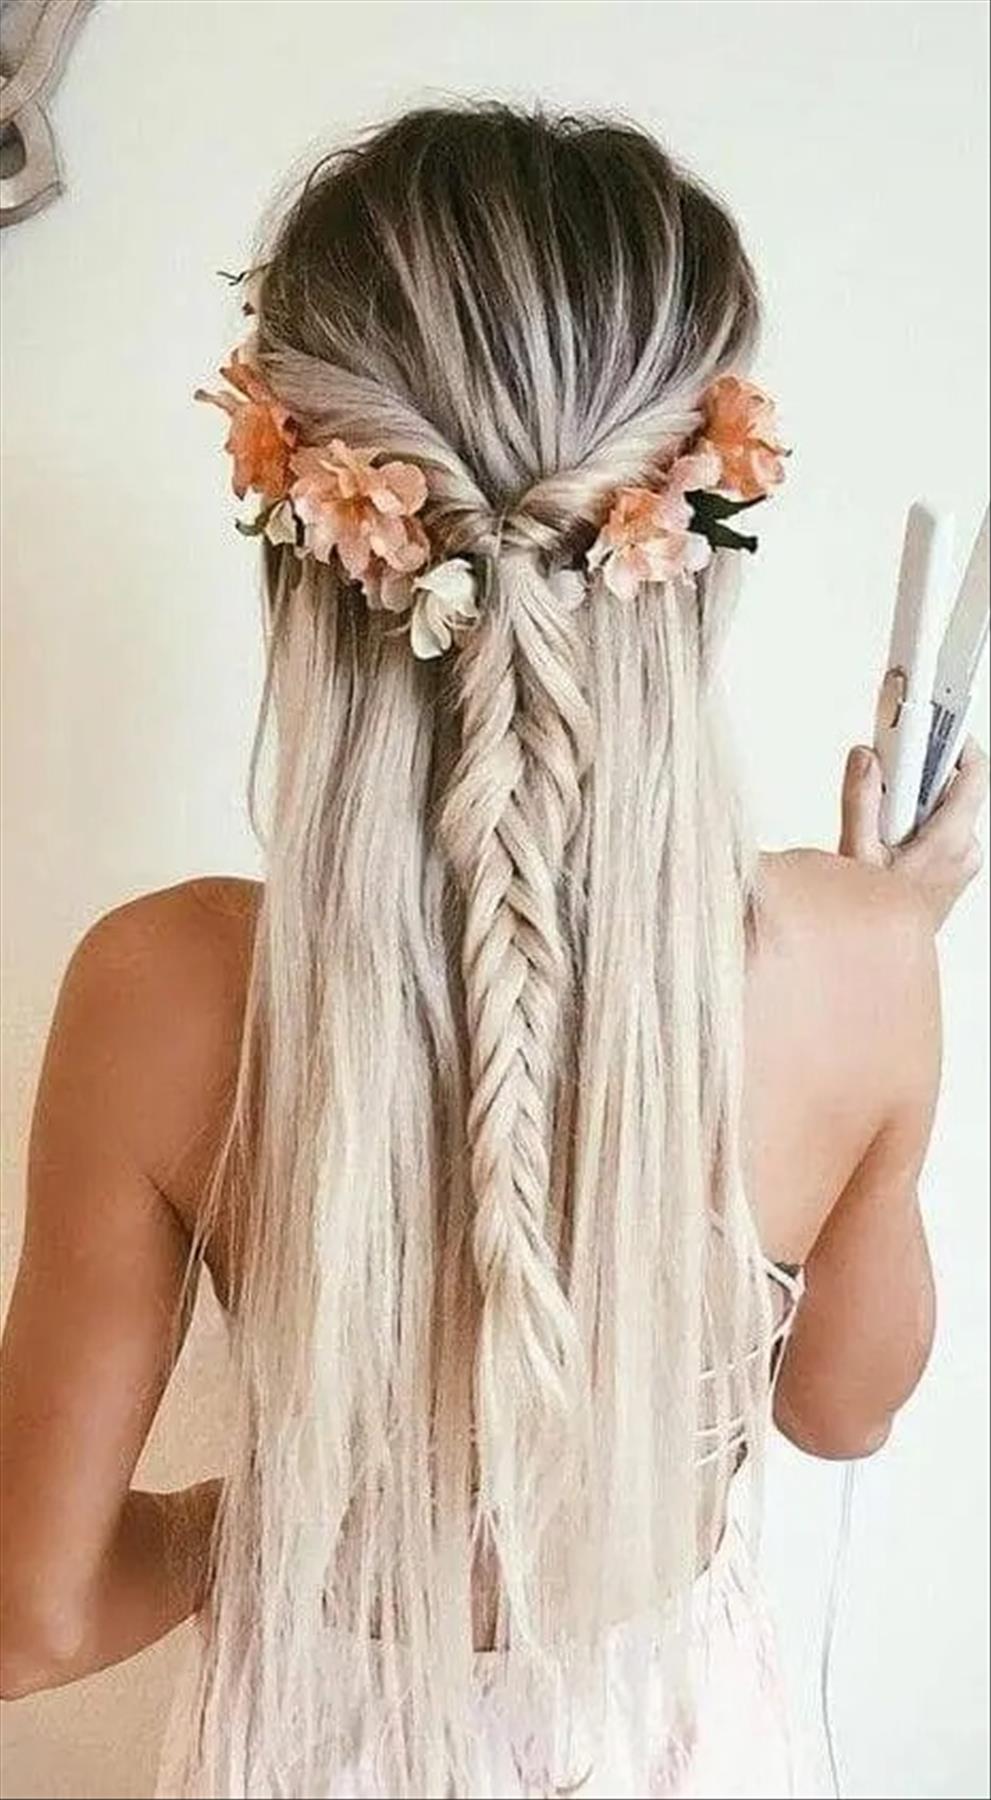 Elegant prom hairstyle design ideas- updos, half up half down, braids